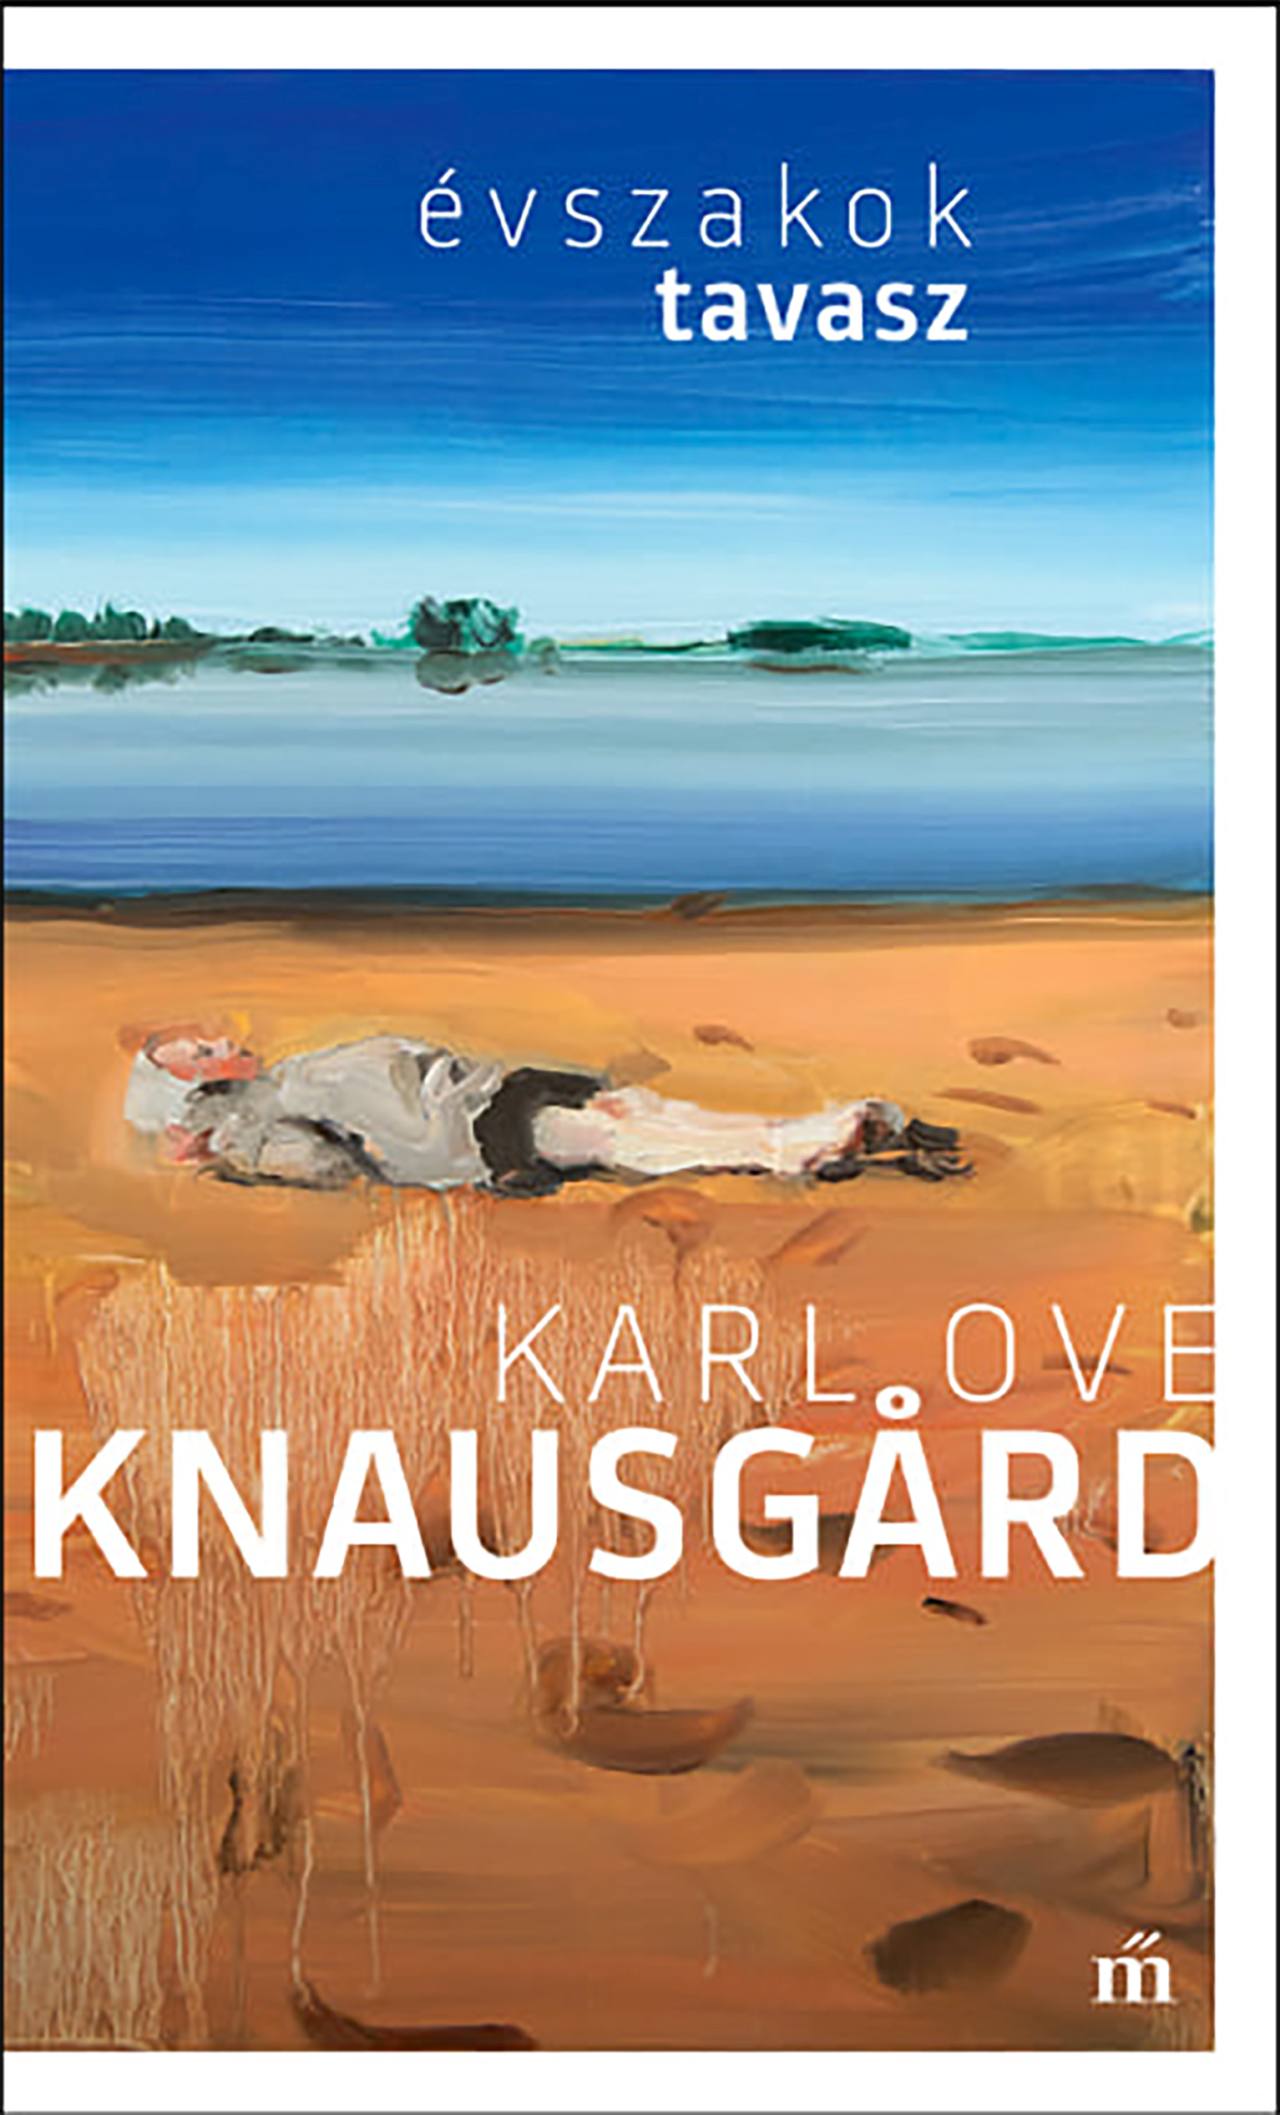 Knausgard, Karl Ove - Tavasz. Évszakok